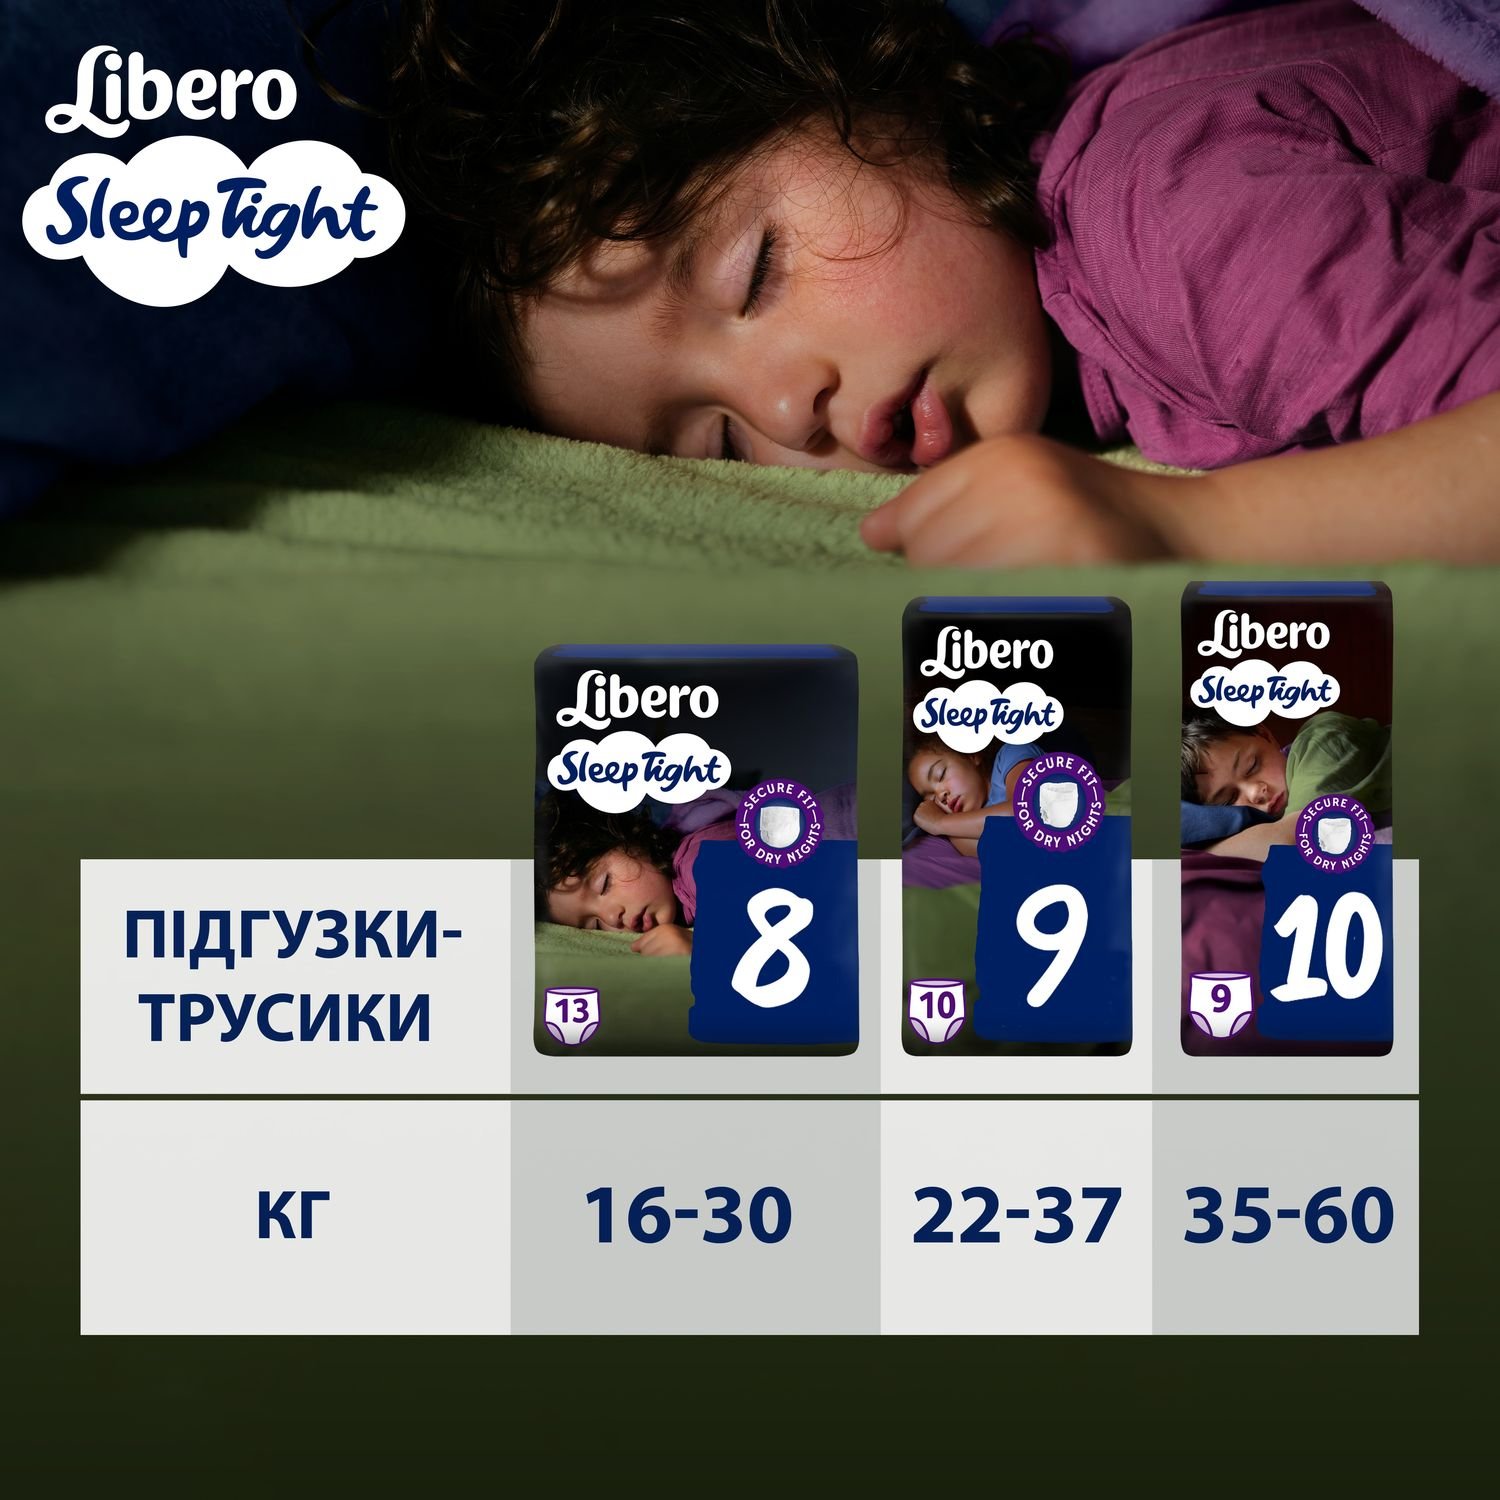 Підгузки-трусики Libero Sleep Tight 10 (35-60 кг), 9 шт. - фото 8